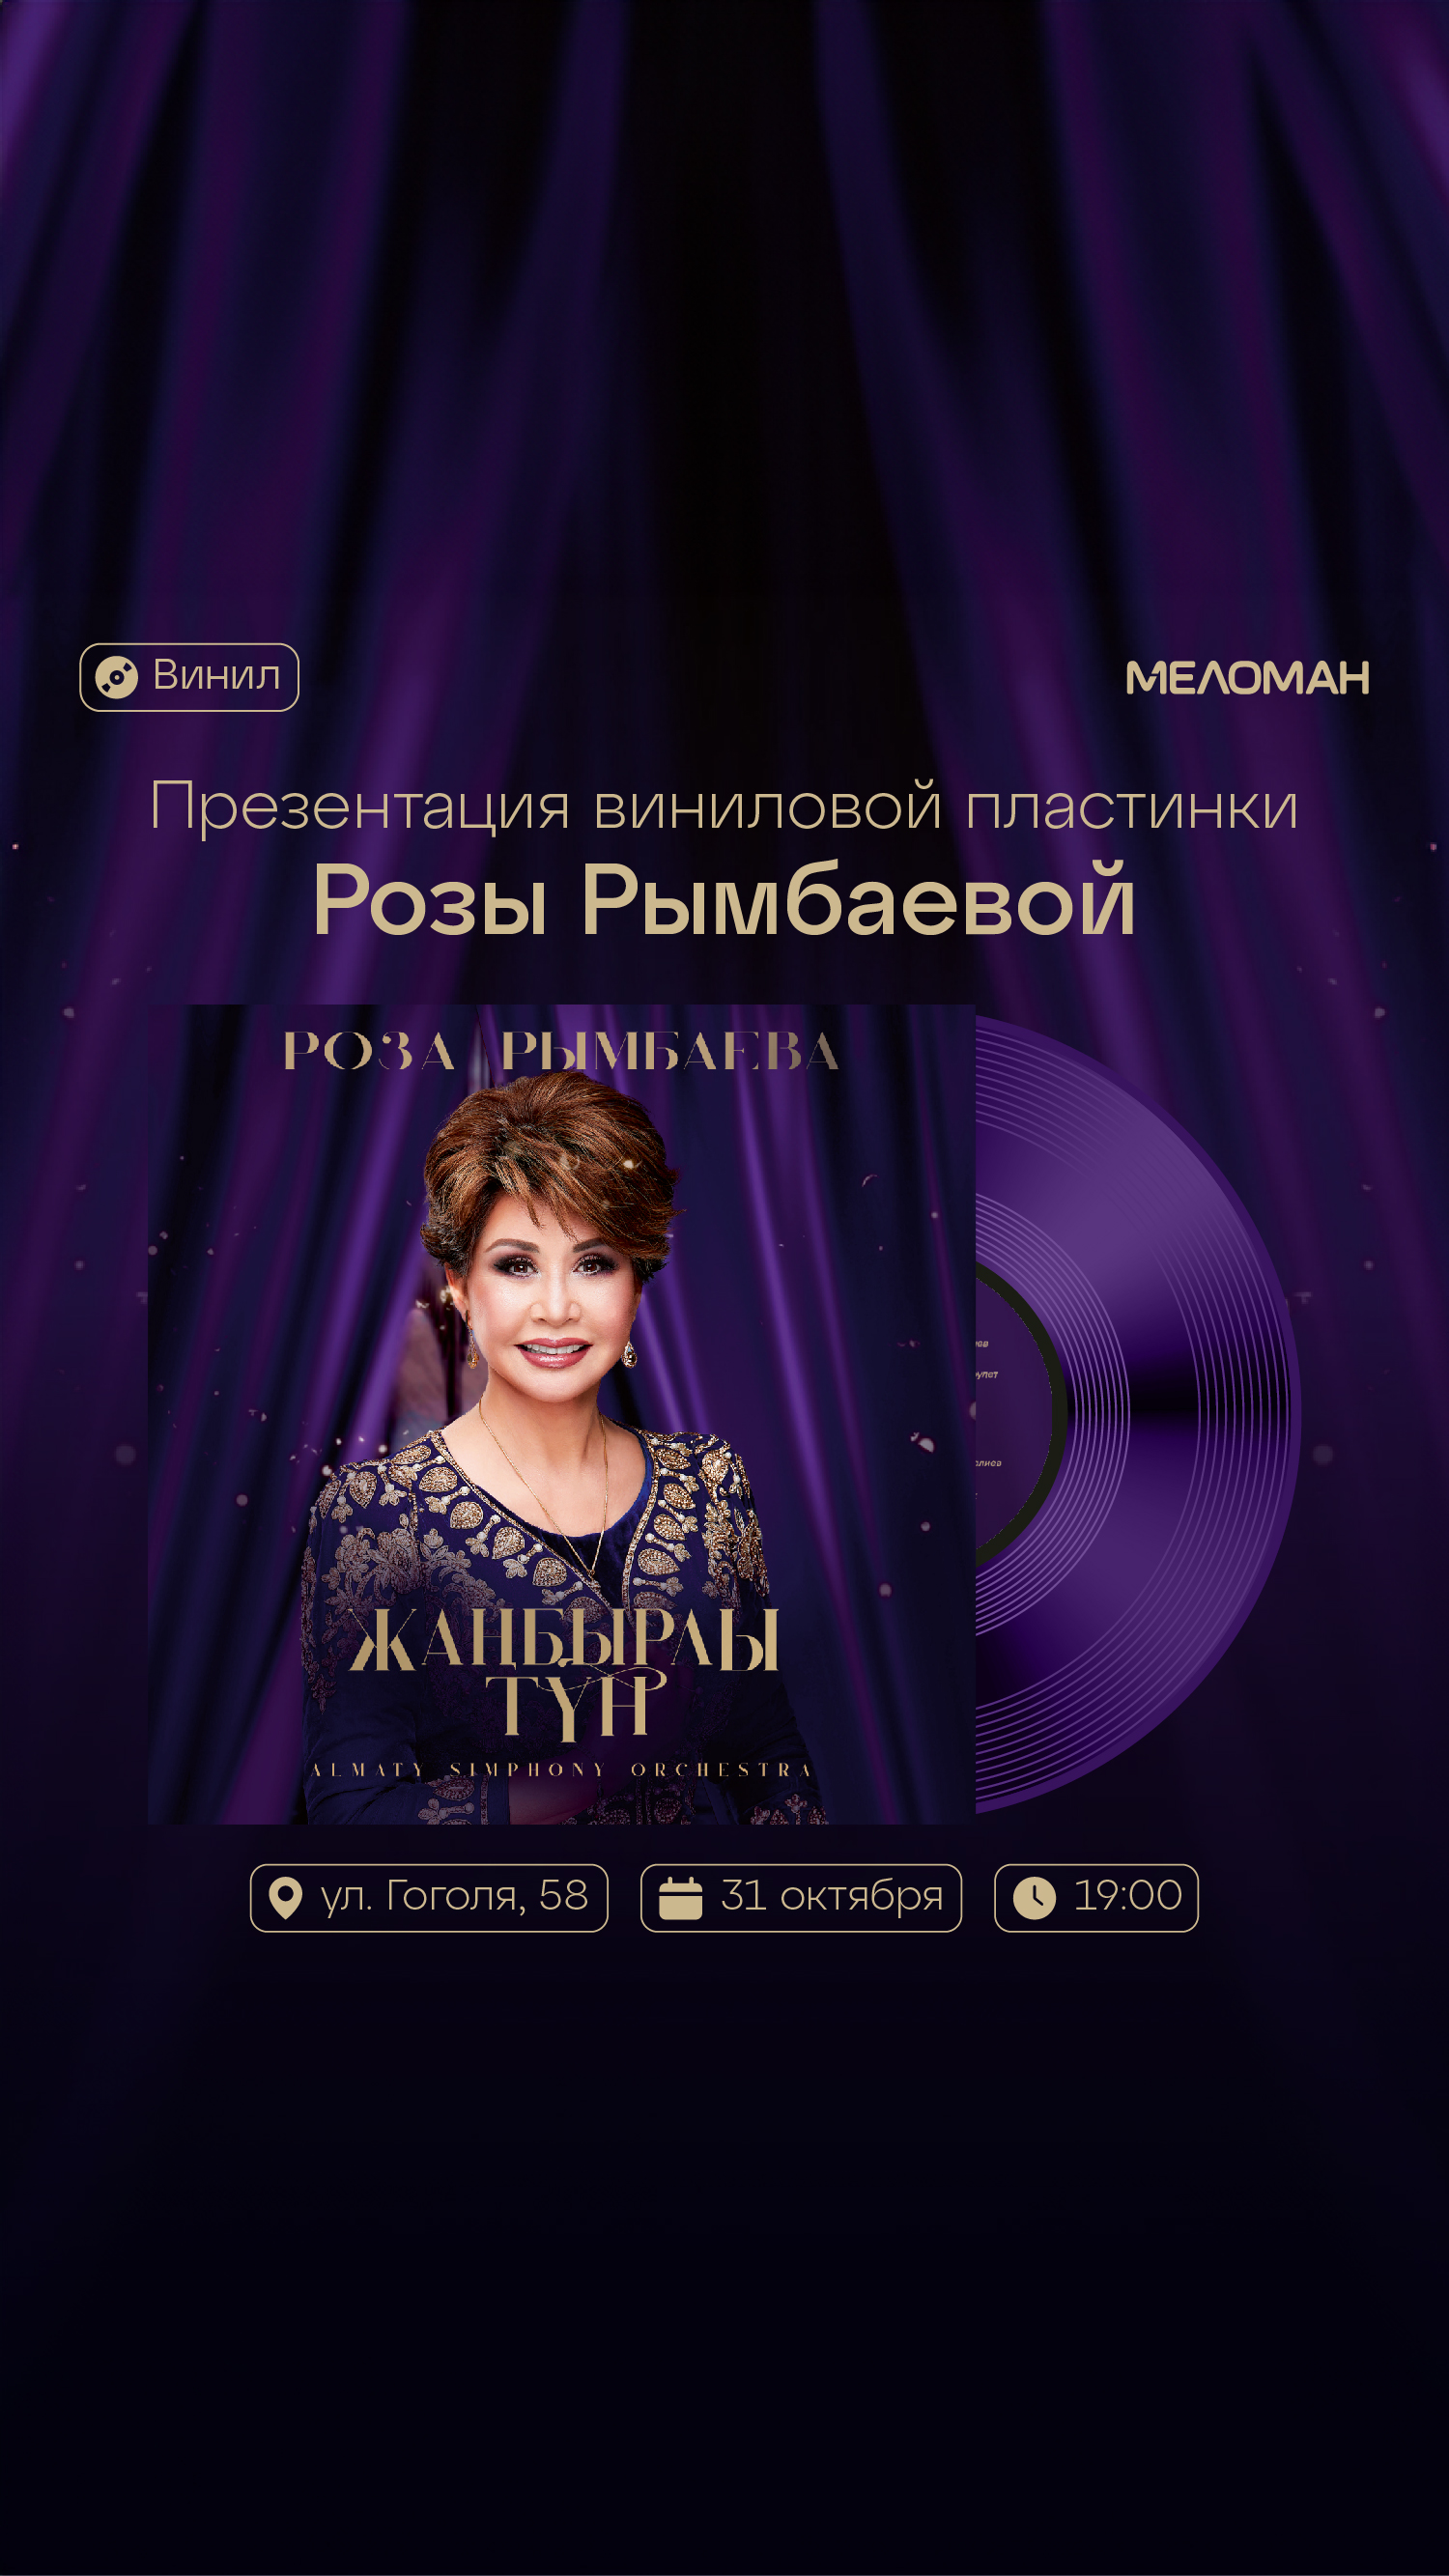 Роза Рымбаева – автограф-сессия в поддержку альбома “Жаңбырлы түн”